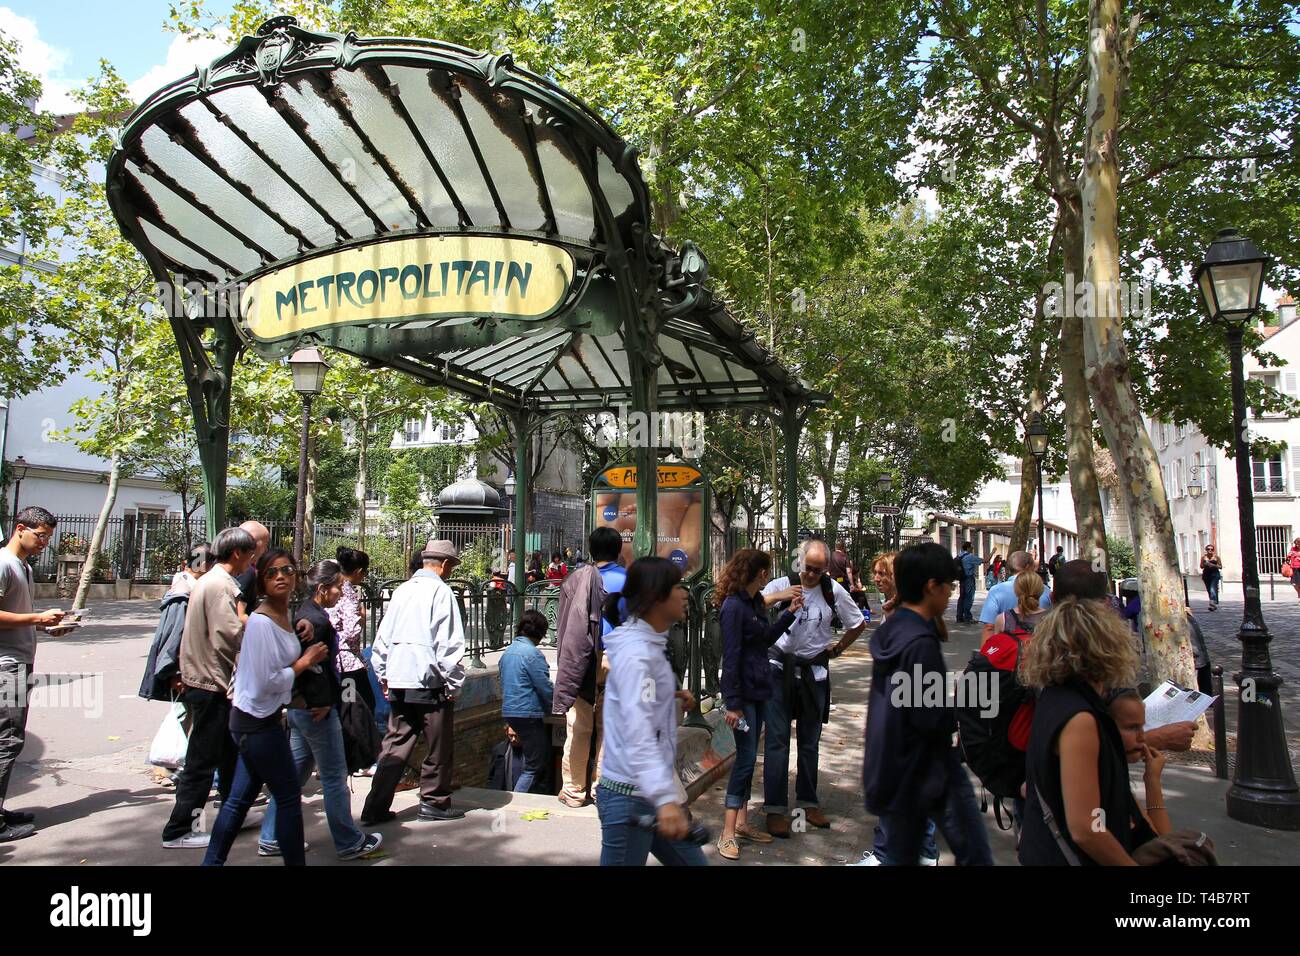 PARIS - le 22 juillet : Les gens entrent dans la station de métro de Paris le 22 juillet 2011 à Paris, France. Métro de Paris est le 2ème plus grand système de métro dans le monde entier par nu Banque D'Images